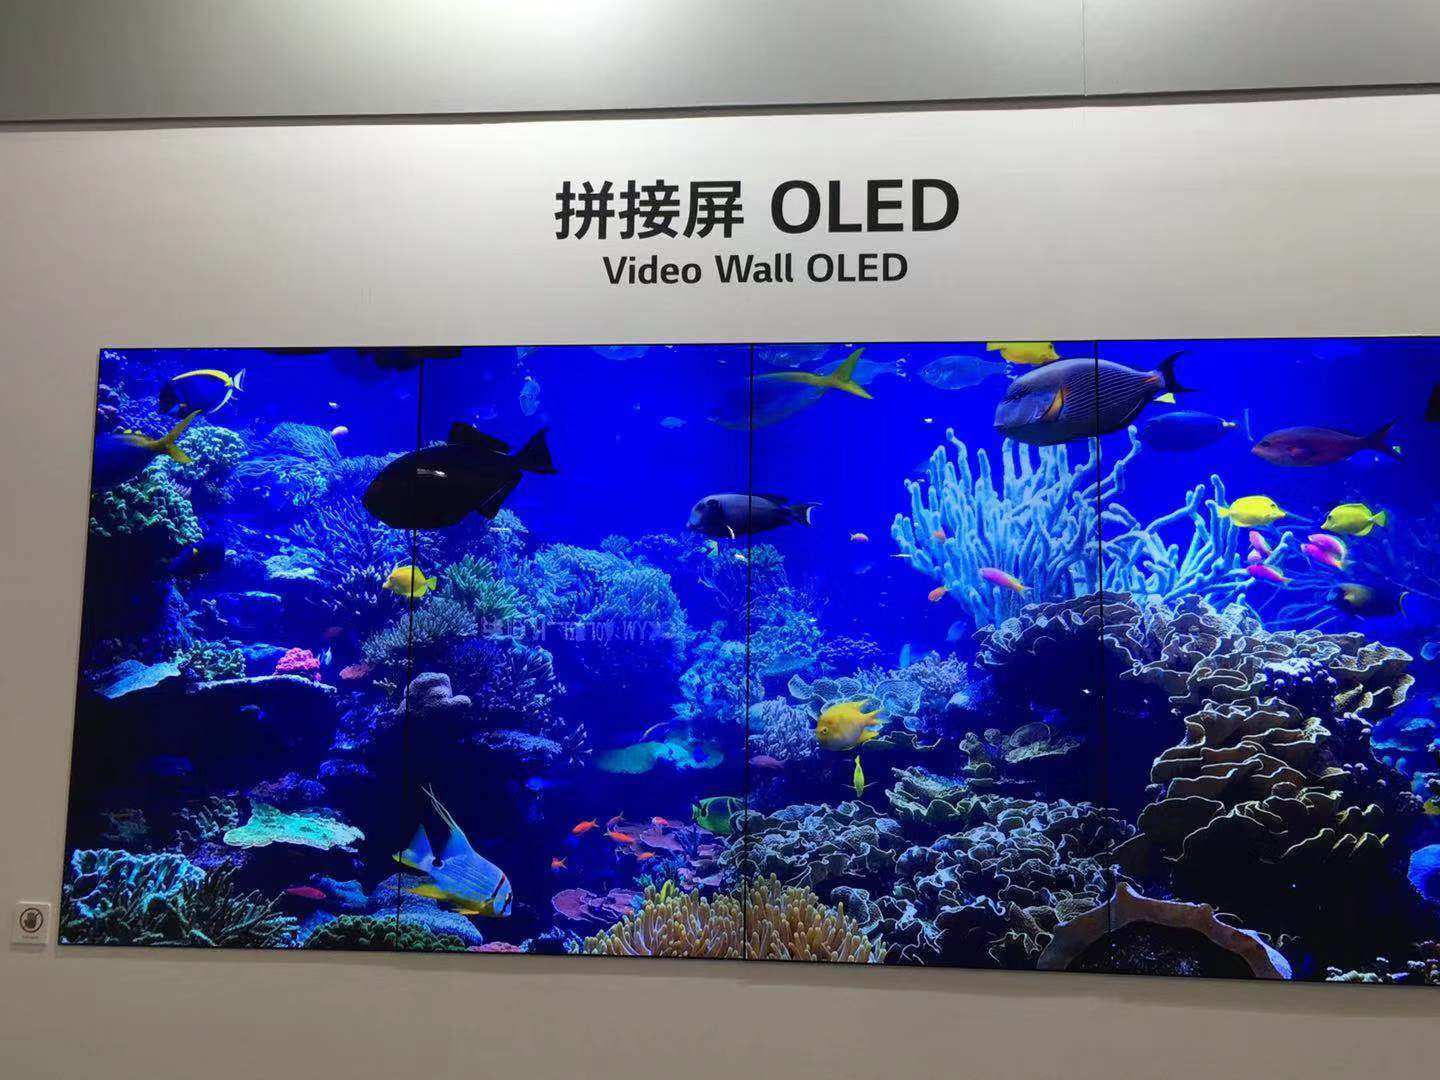 大尺寸OLED面板投资大幅增多 中日韩OLED竞赛也将进入新阶段